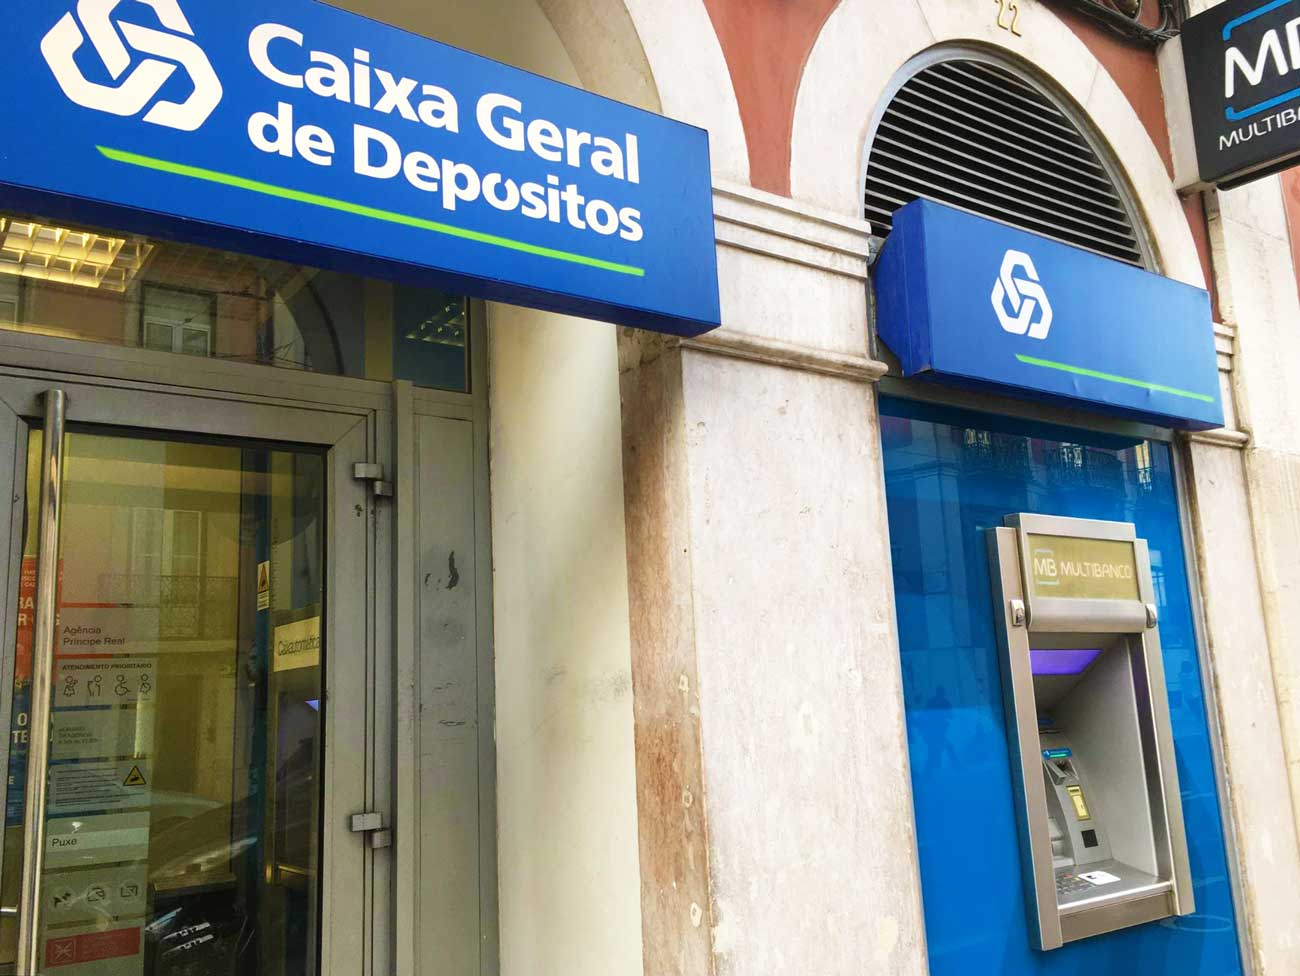 ポルトガルの銀行Caixa Geral de Depositos (カイシャ・ジェラル・デ・デポジトス)